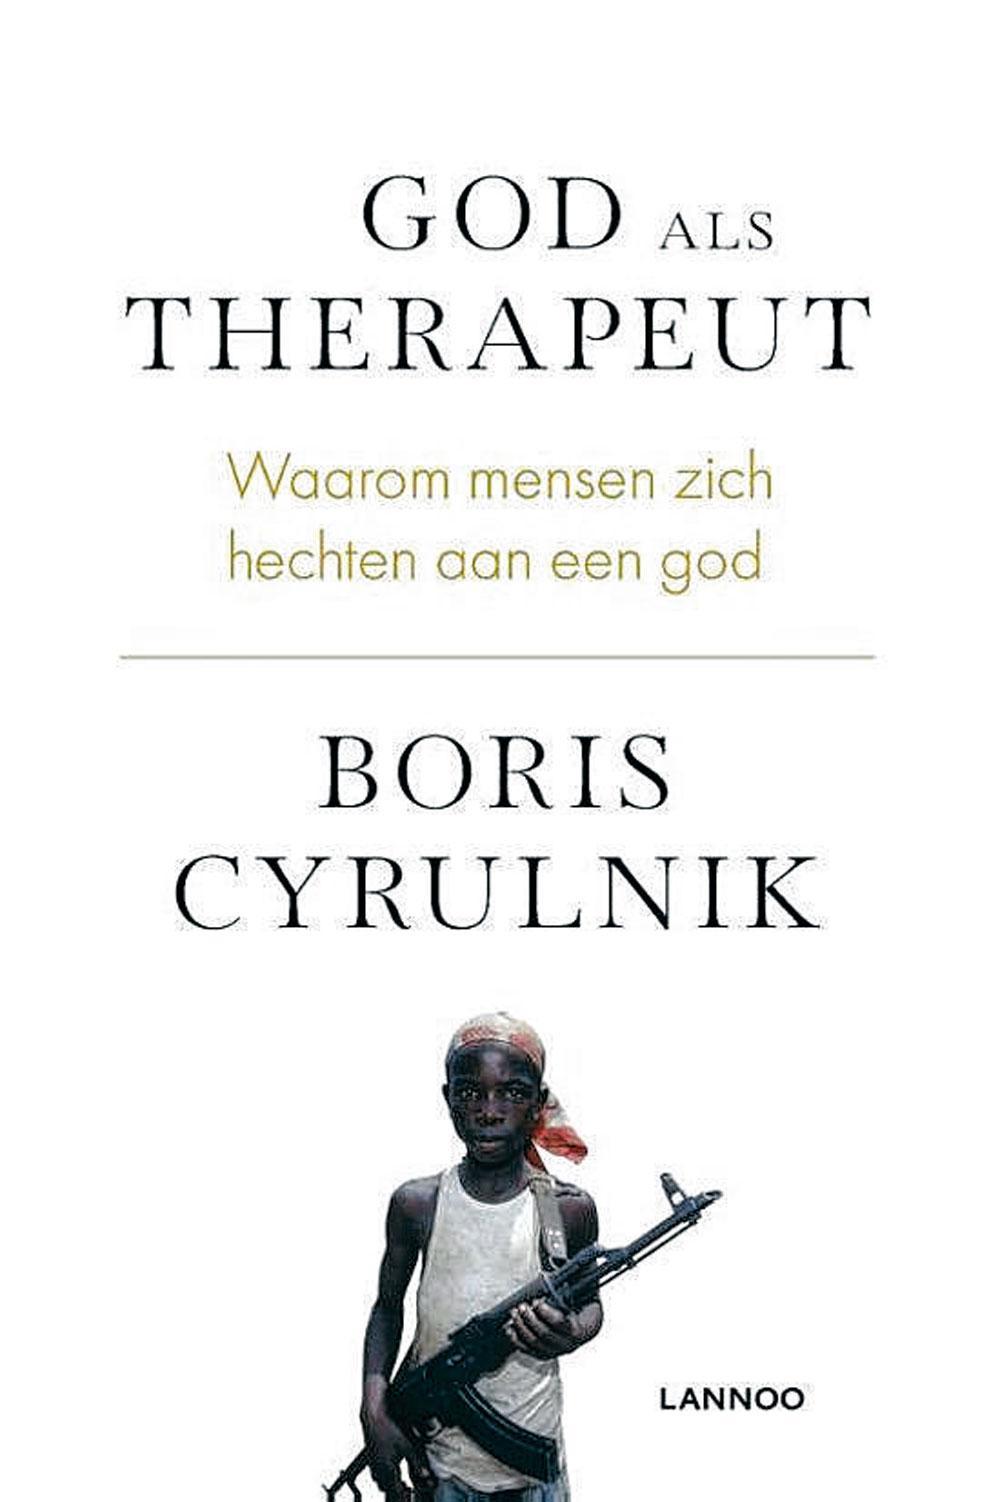 Boris Cyrulnik, God als therapeut: waarom mensen zich hechten aan een god, Lannoo, 272 blz., 24,99 euro.